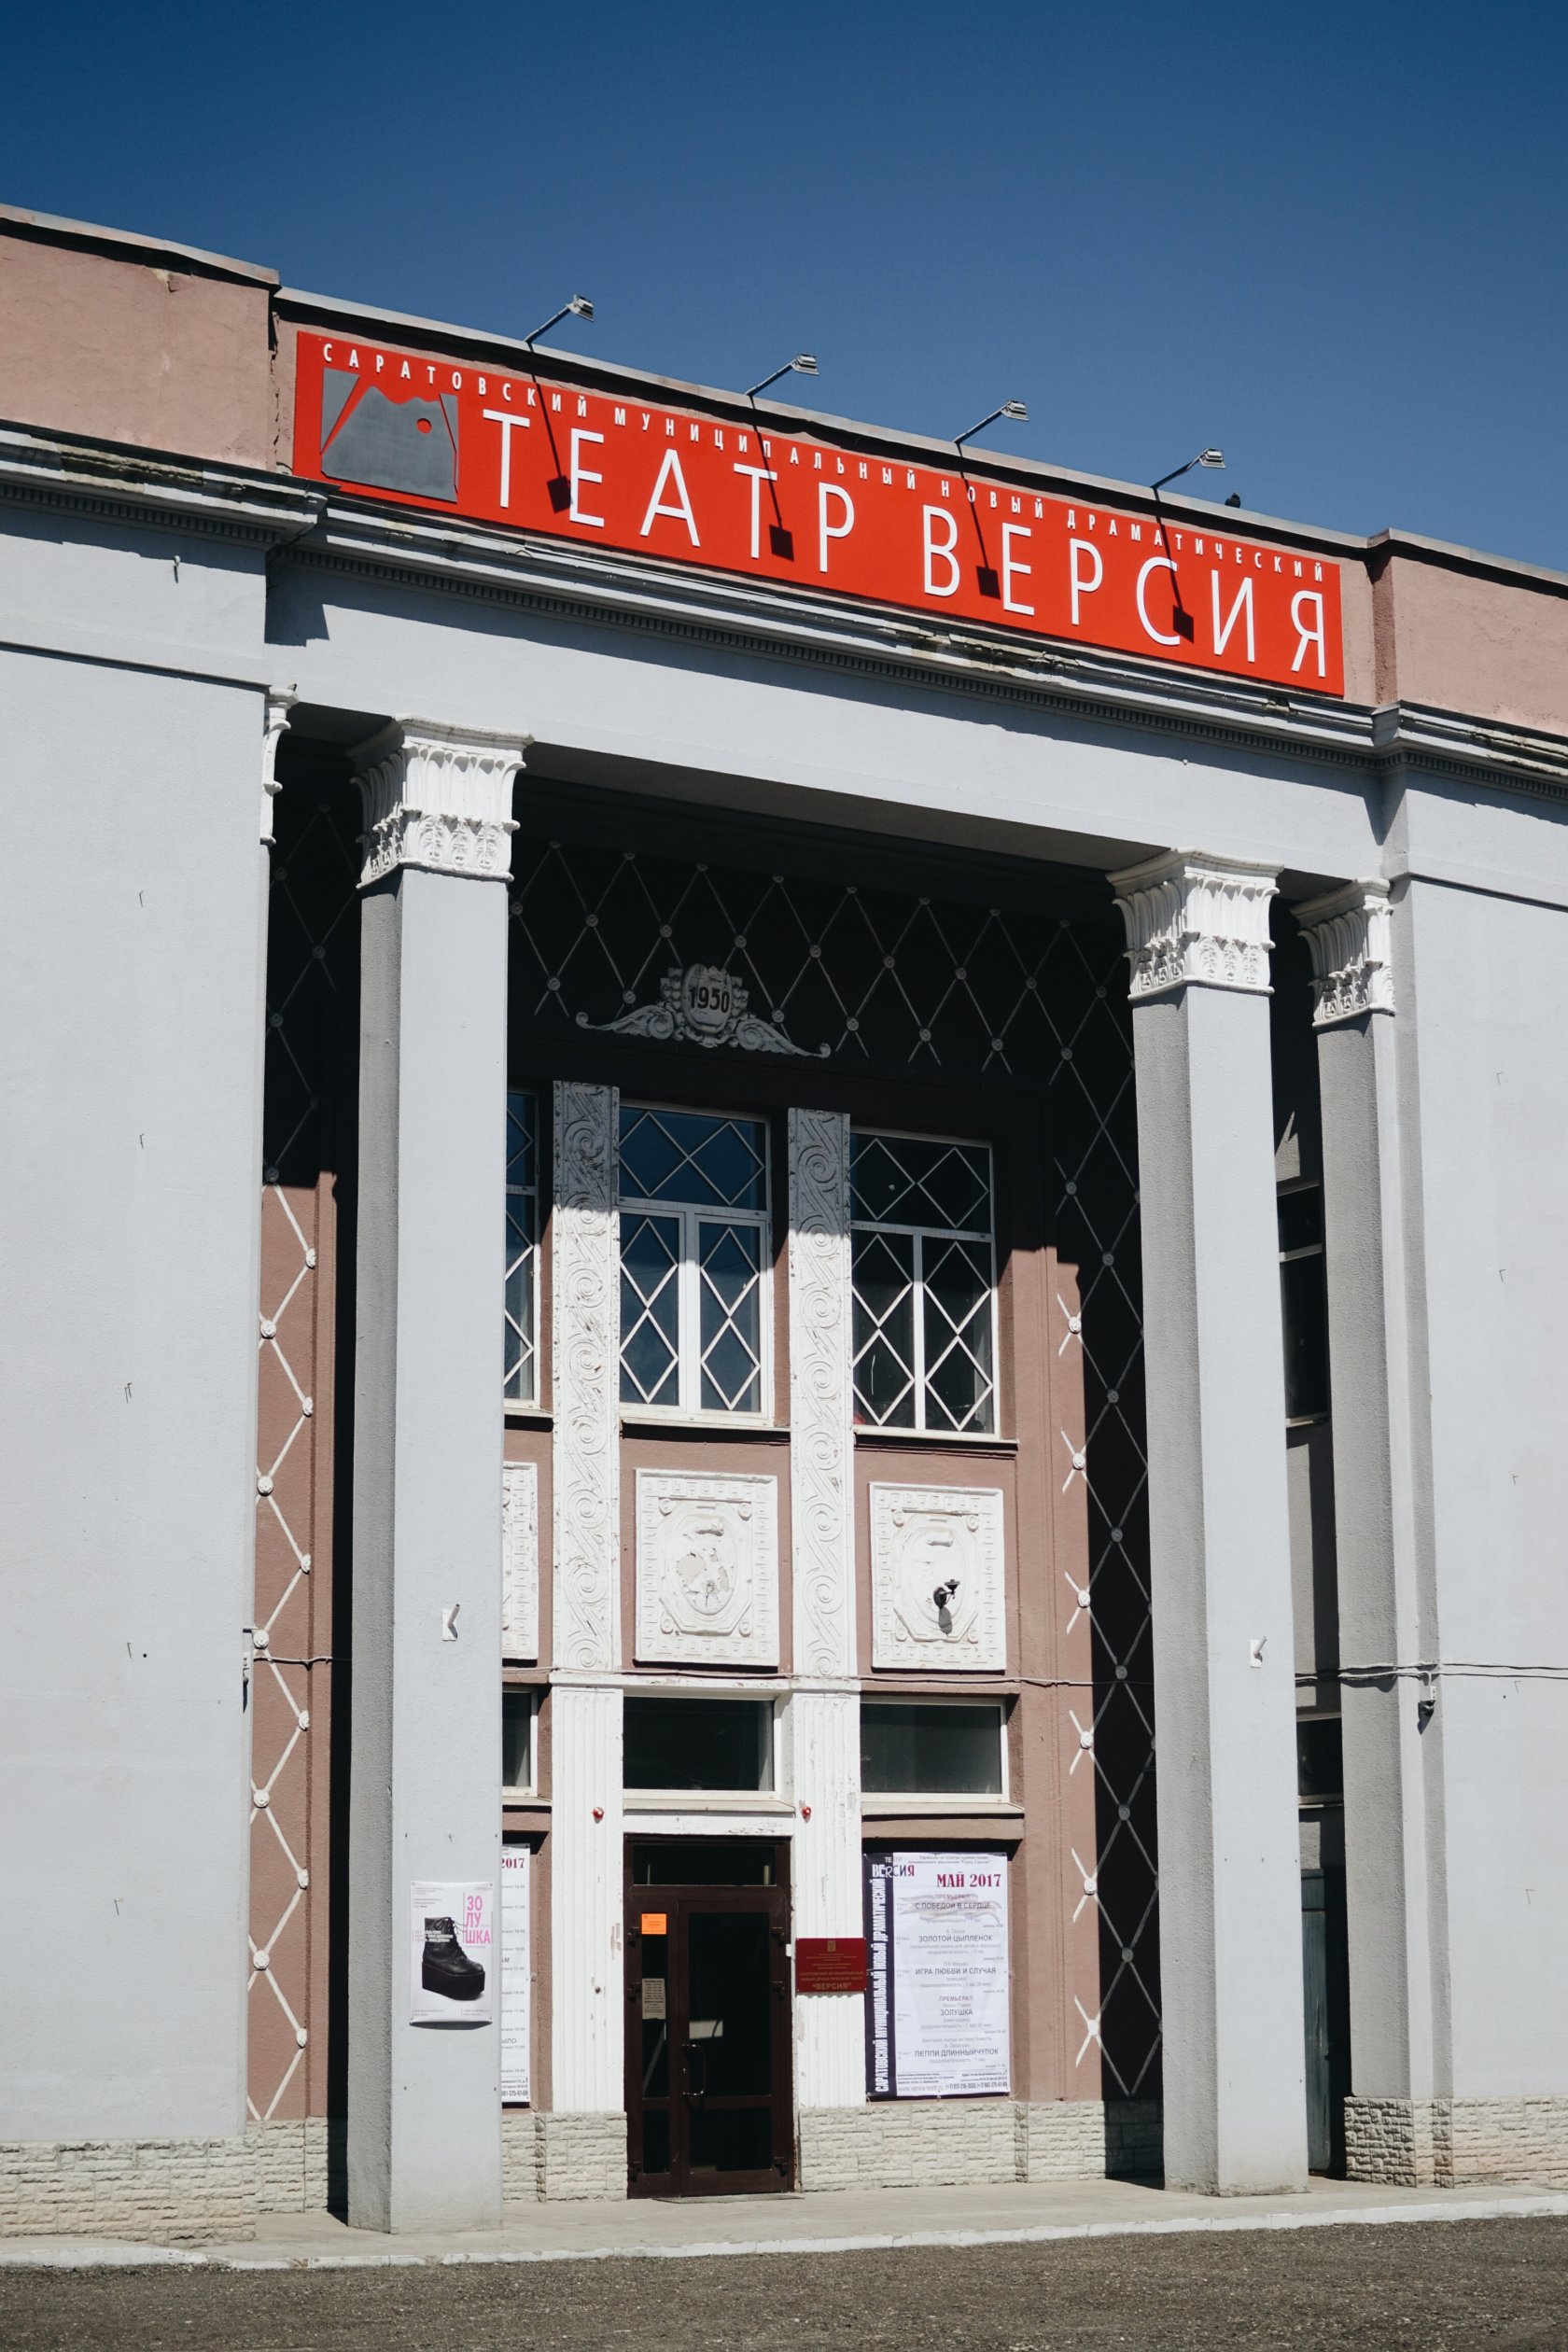 Саратовский муниципальный драматический театр Версия